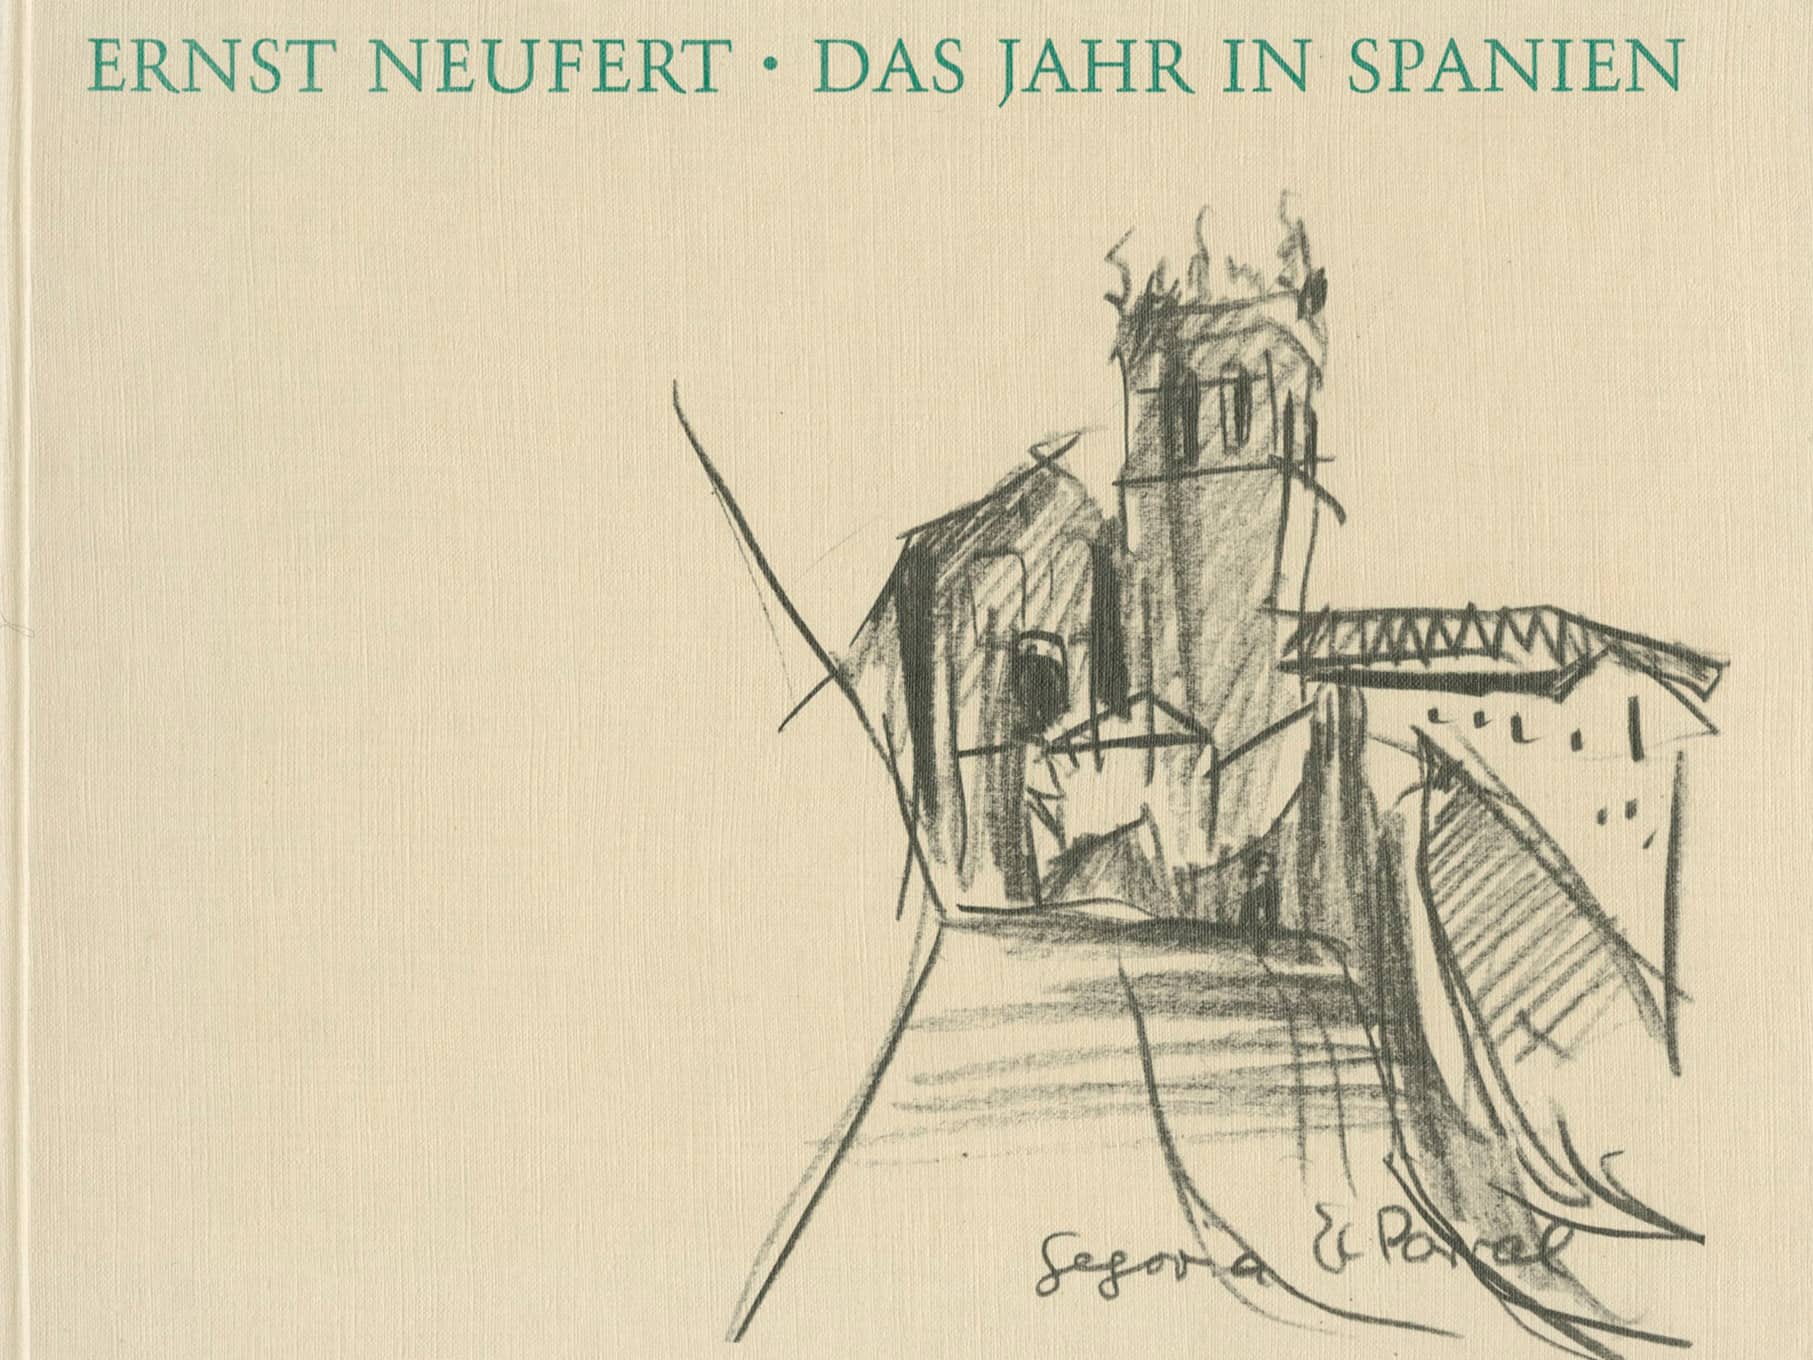 Buchcover “Das Jahr in Spanien 1920/21” von Ernst Neufert